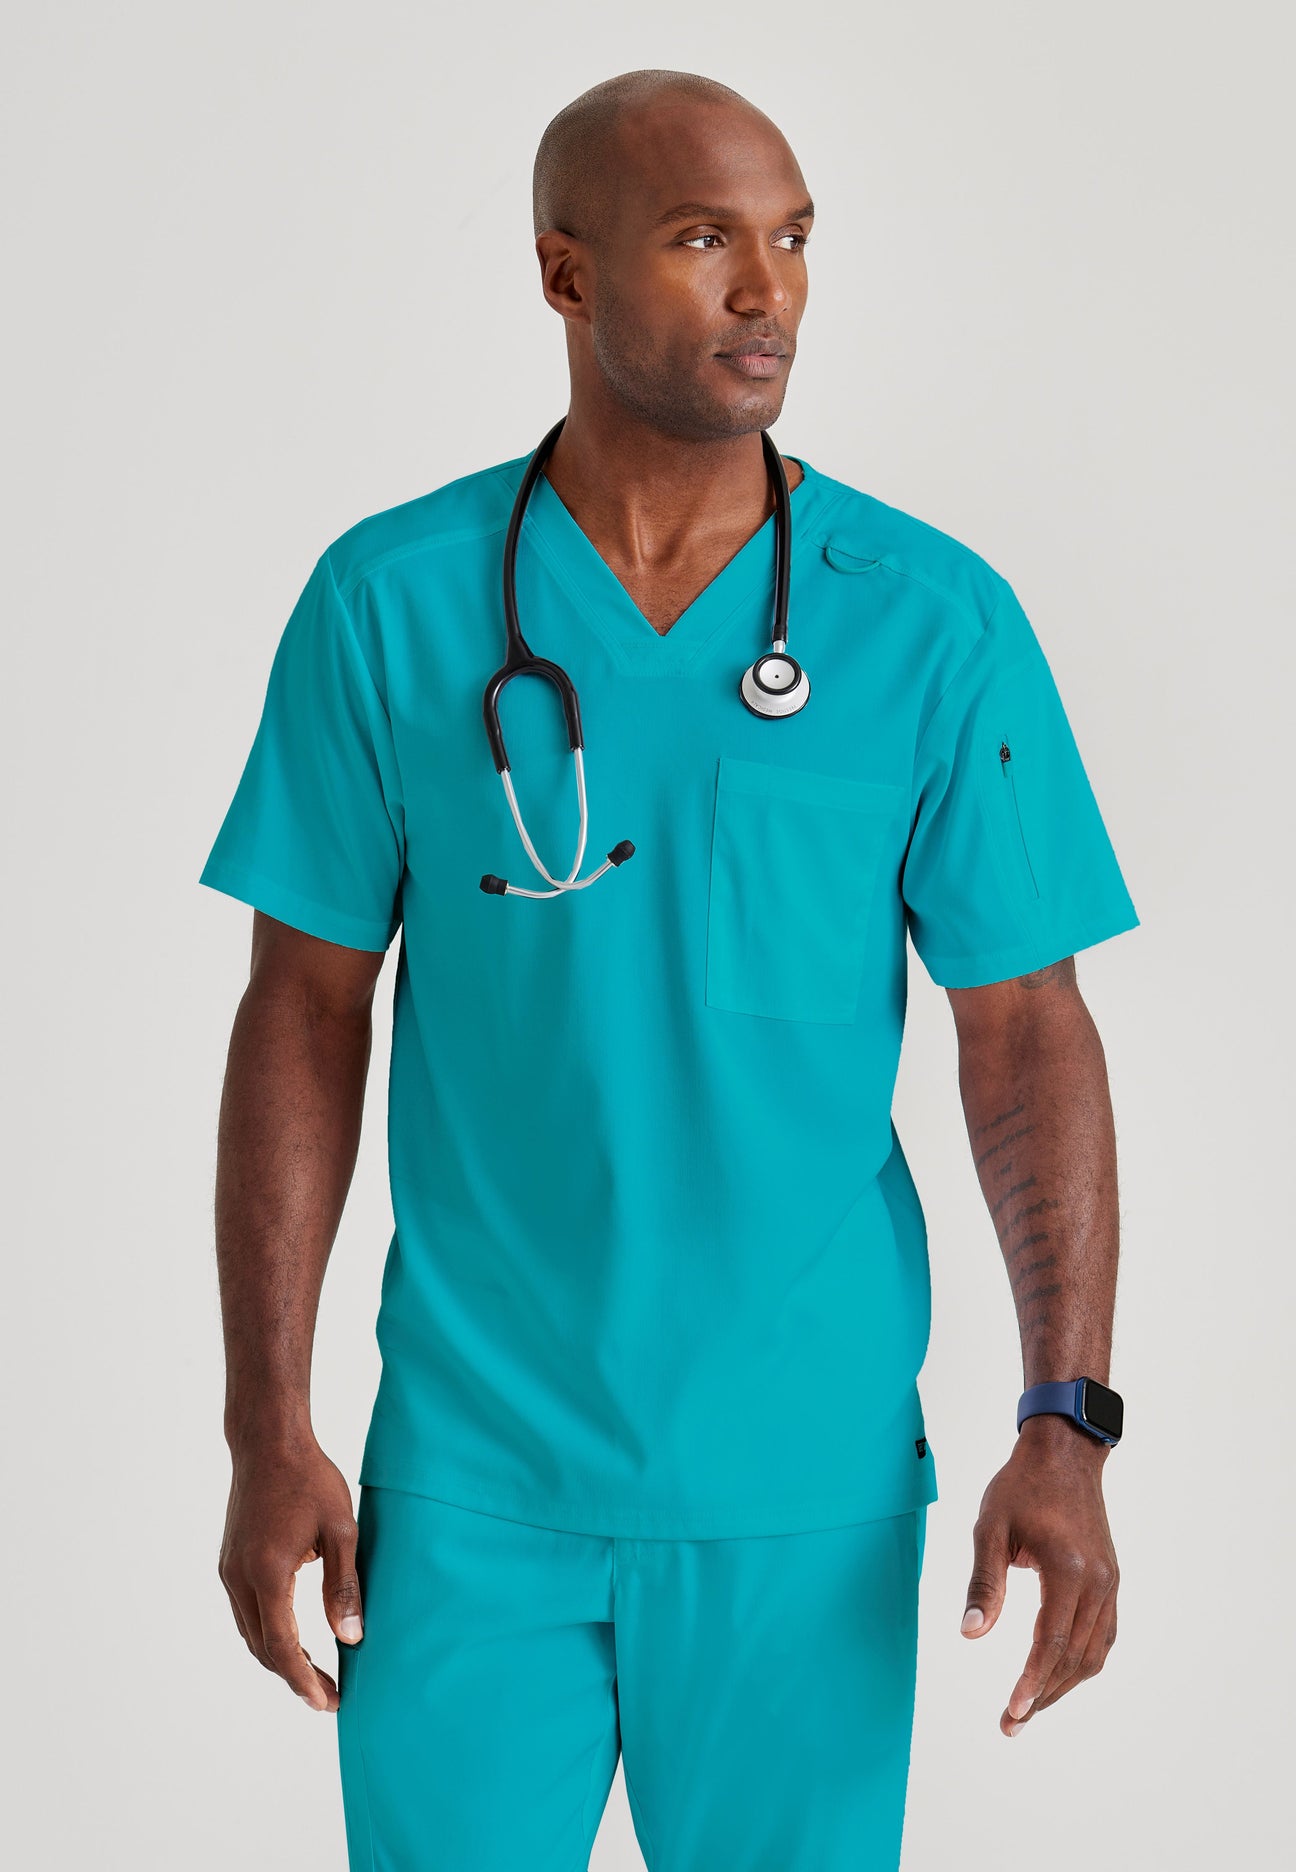 Shop New Arrivals | Medical Scrubs | Barco Uniforms